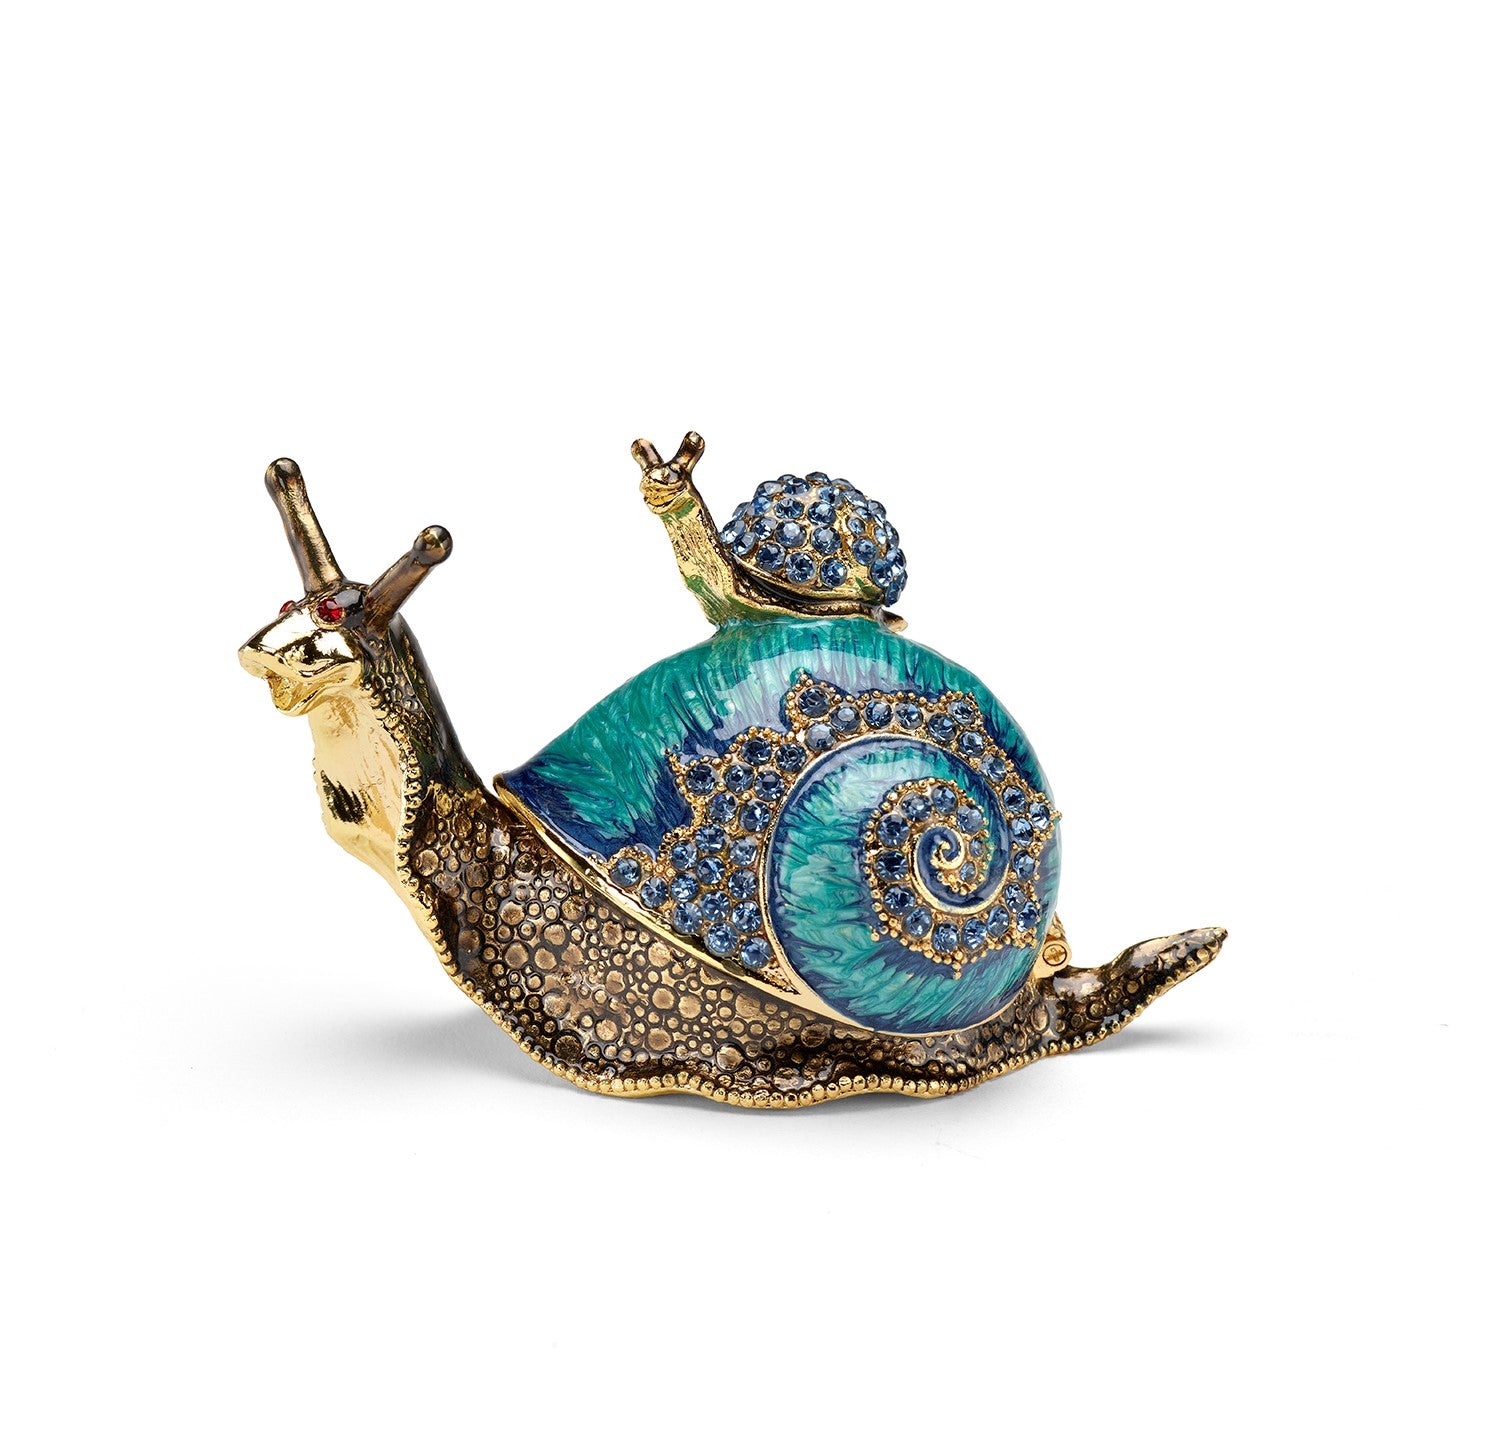 Snail & Baby Jeweled Trinket Box